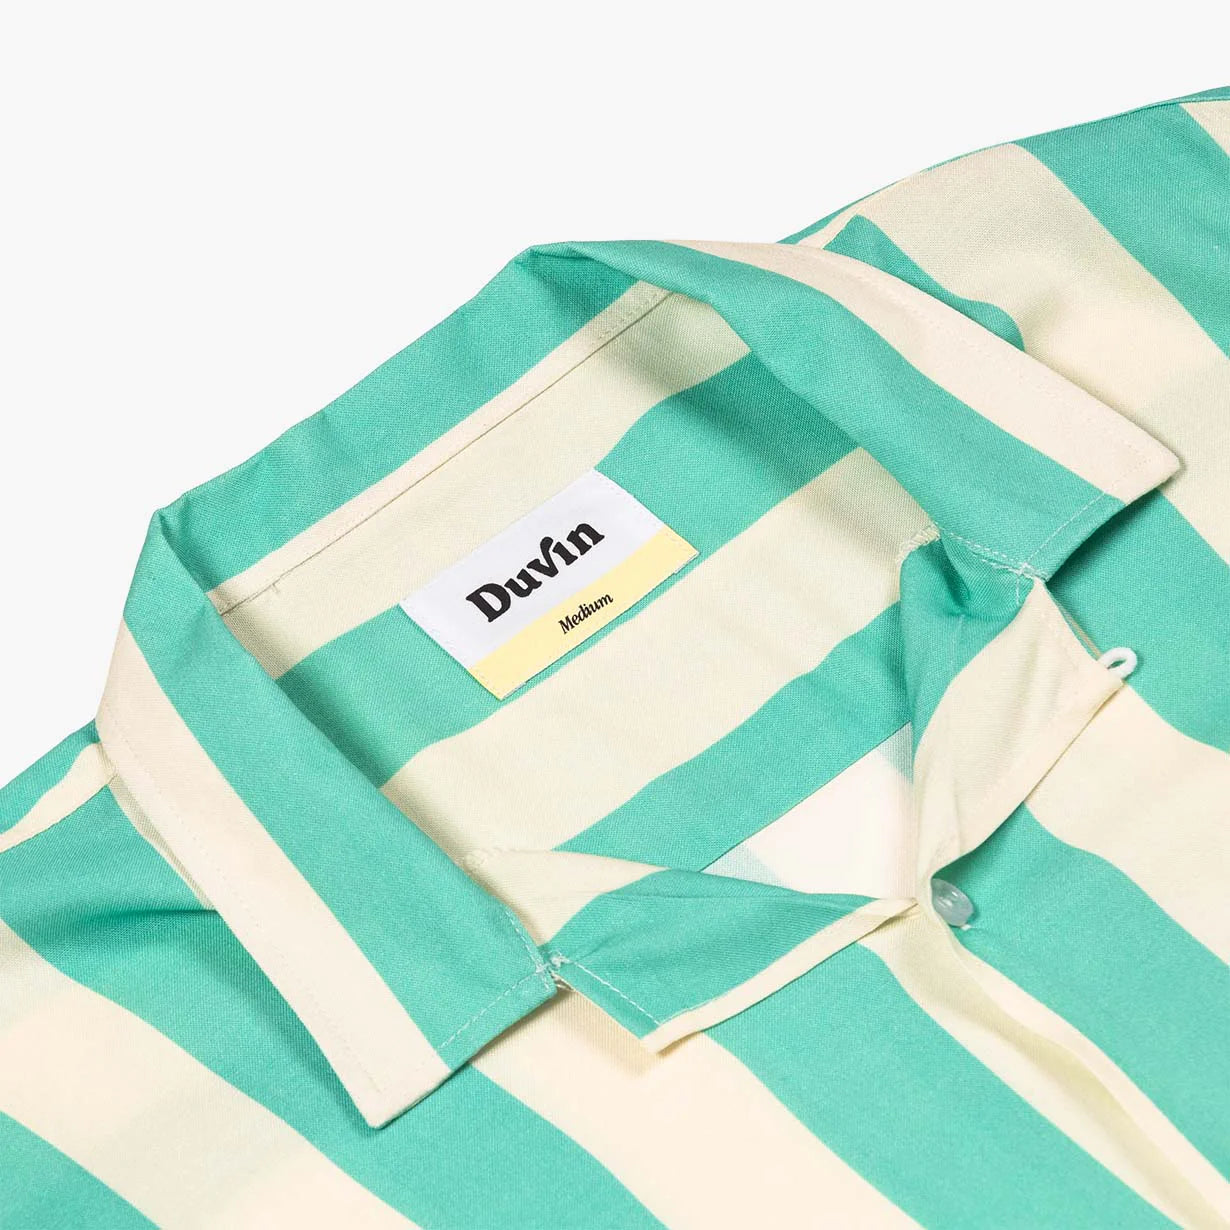 Duvin Design - "Traveler" Buttonup Shirt - Teal